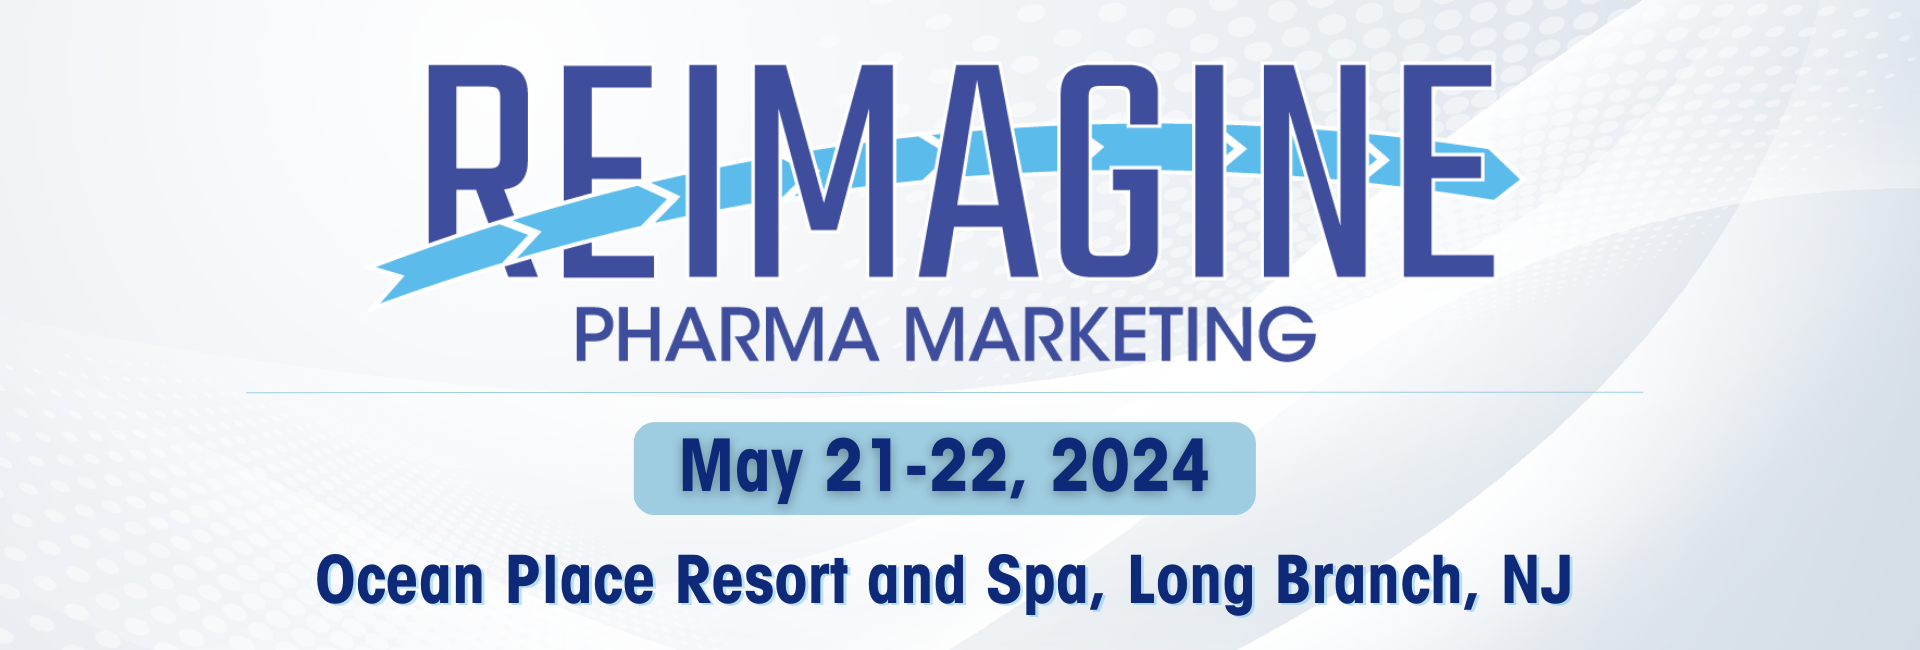 Banner of Re Imagine Pharma